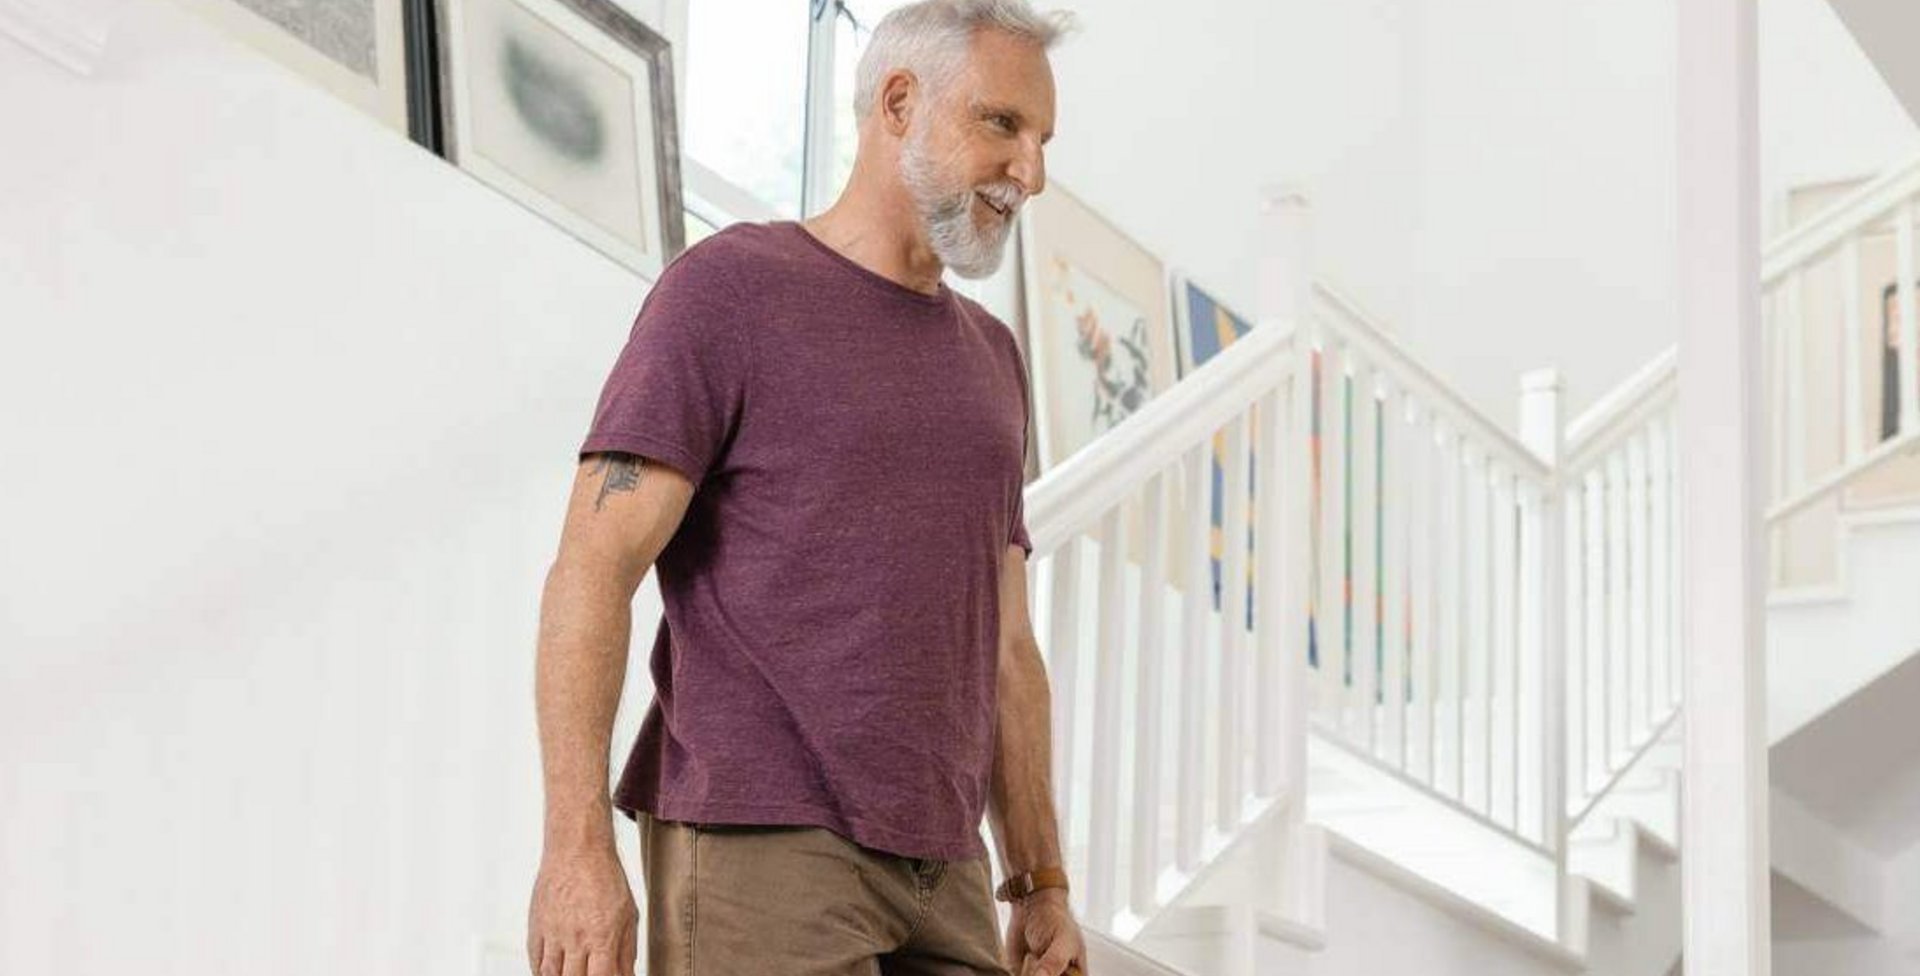 Das Bild zeigt einen Mann beim Herabgehen einer Treppe. Zur Stabilisierung seines Fußgelenks trägt er eine MalleoTrain Bandage, die u.a. bei einer Sprunggelenkarthrose Abhilfe schafft.